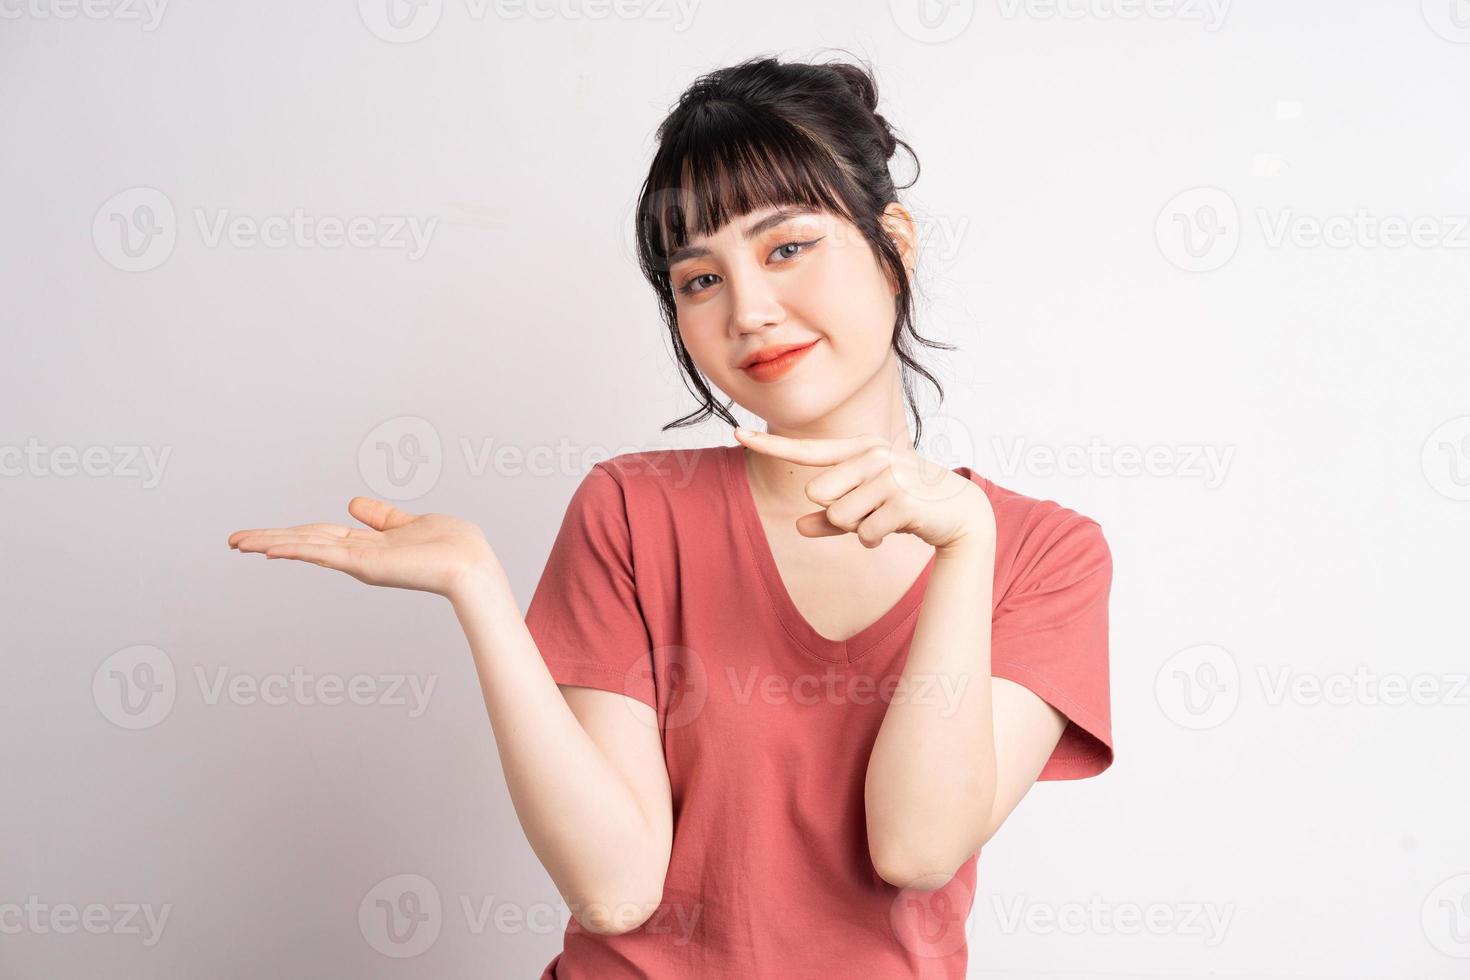 jeune femme asiatique posant sur fond blanc, utilisant le doigt pour pointer et montrer, geste de la main photo